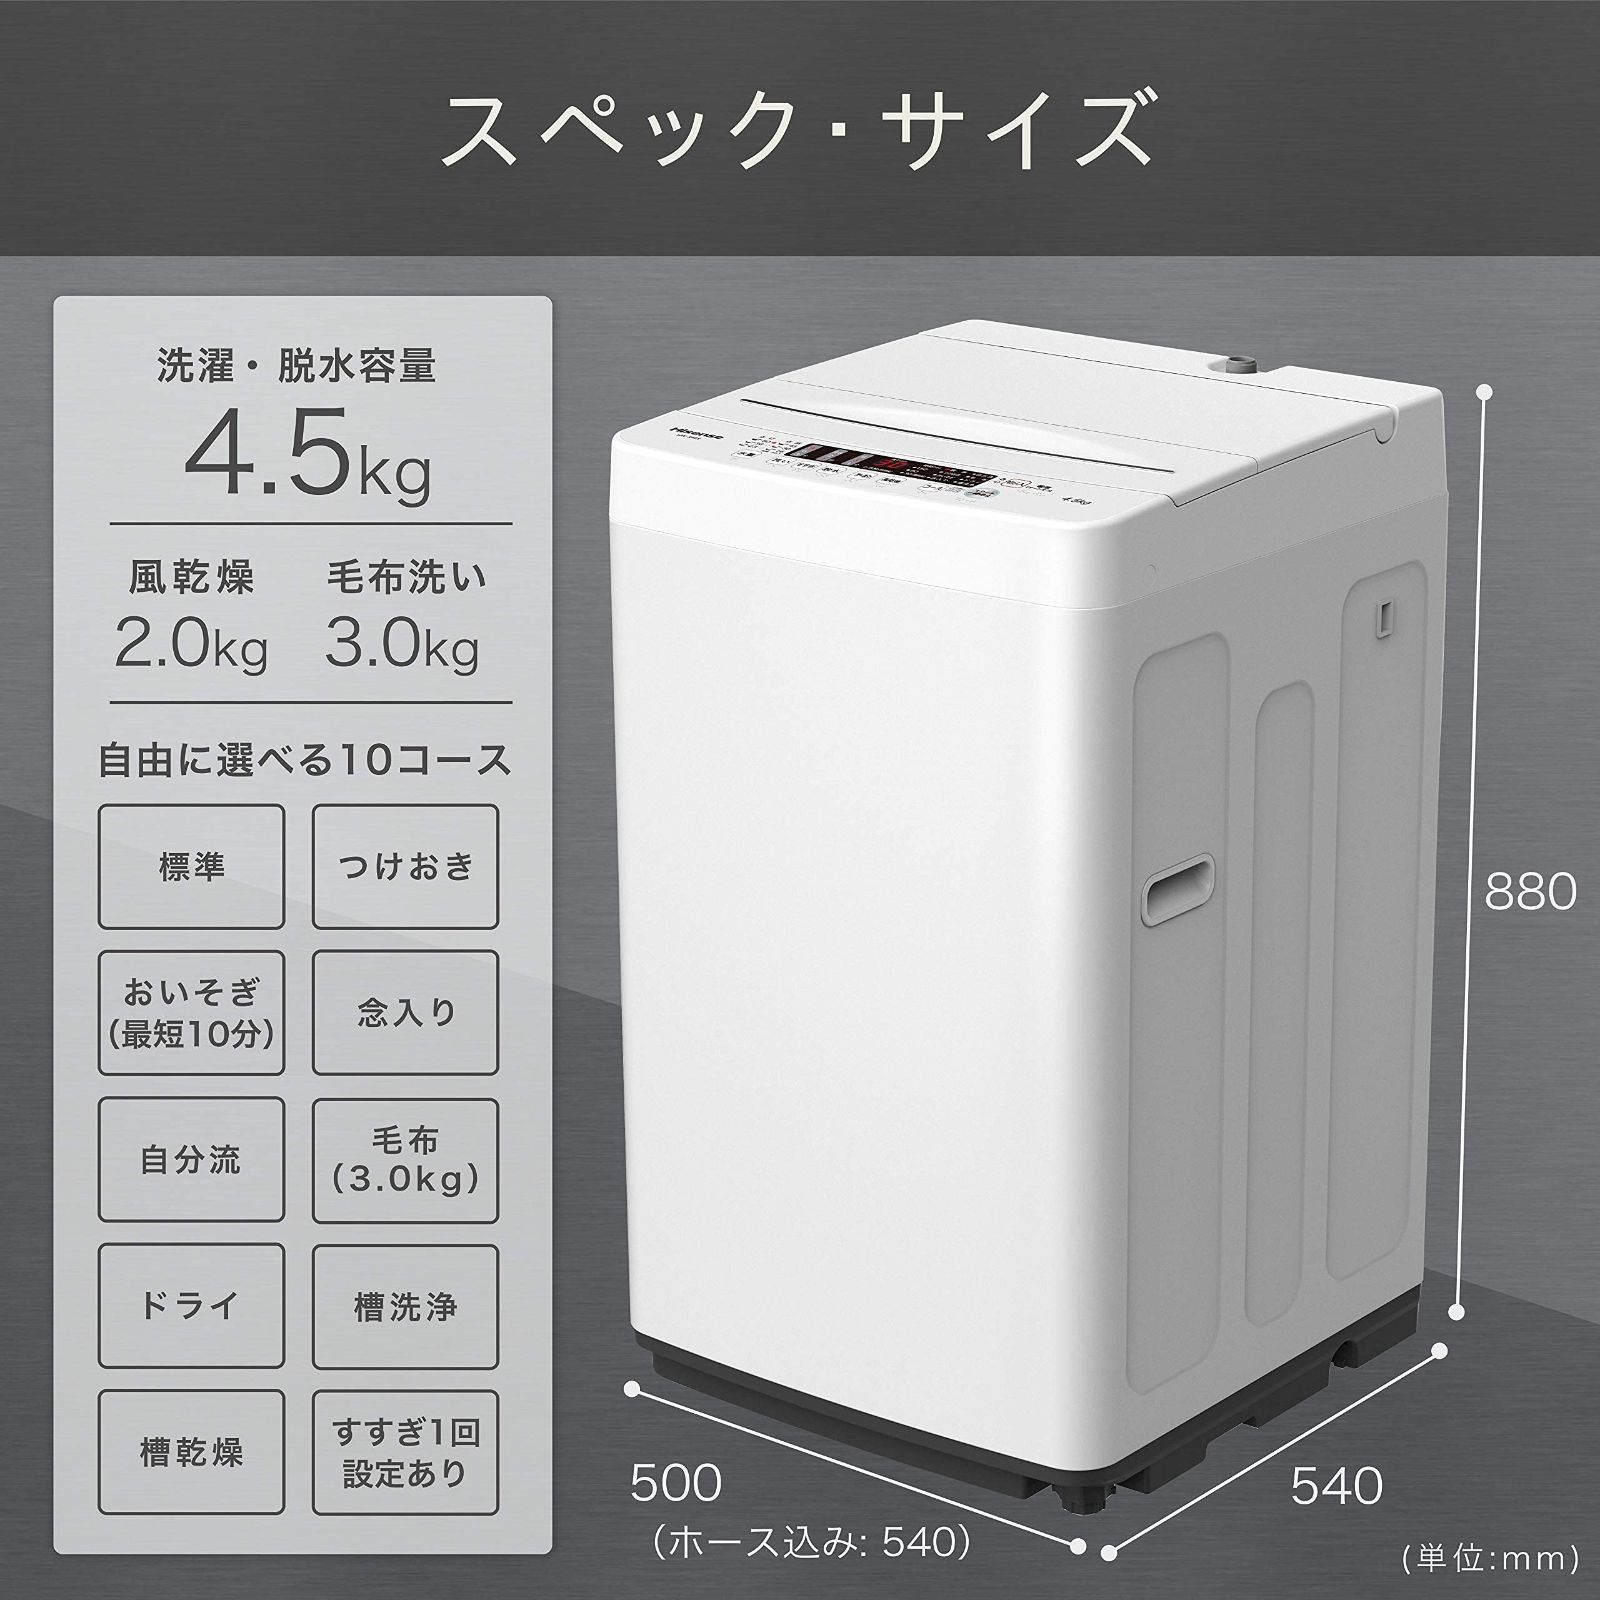 ハイセンス 全自動 洗濯機 4.5kg ホワイト HW-K45E 最短10分洗濯 真下 ...